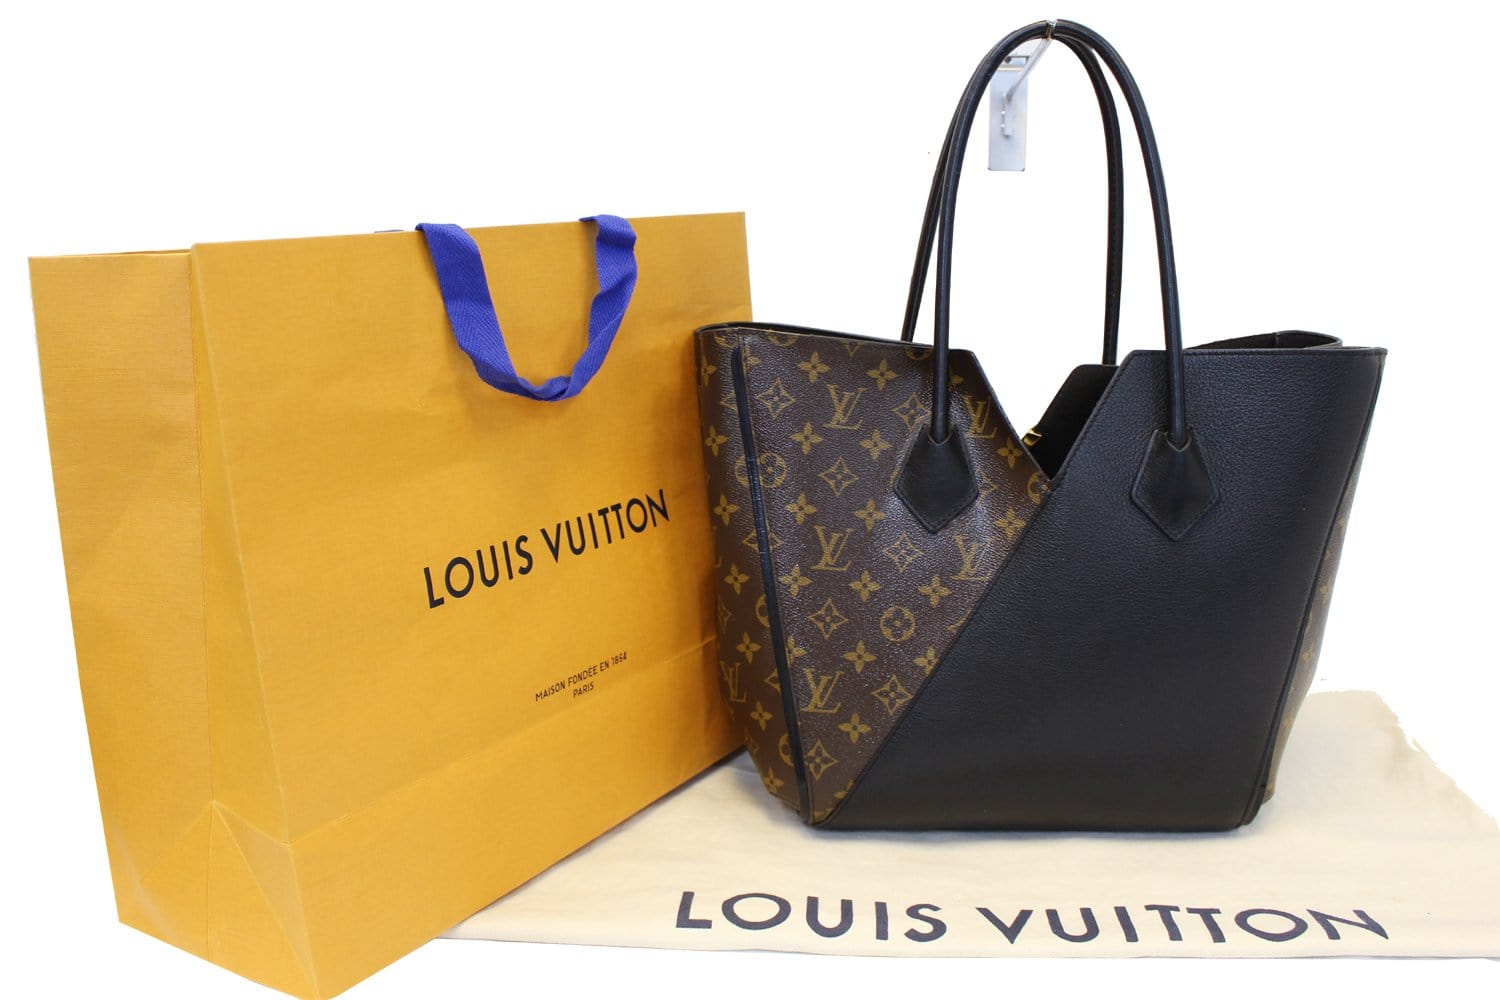 Louis Vuitton Maison Fondee En 1854 Handbag